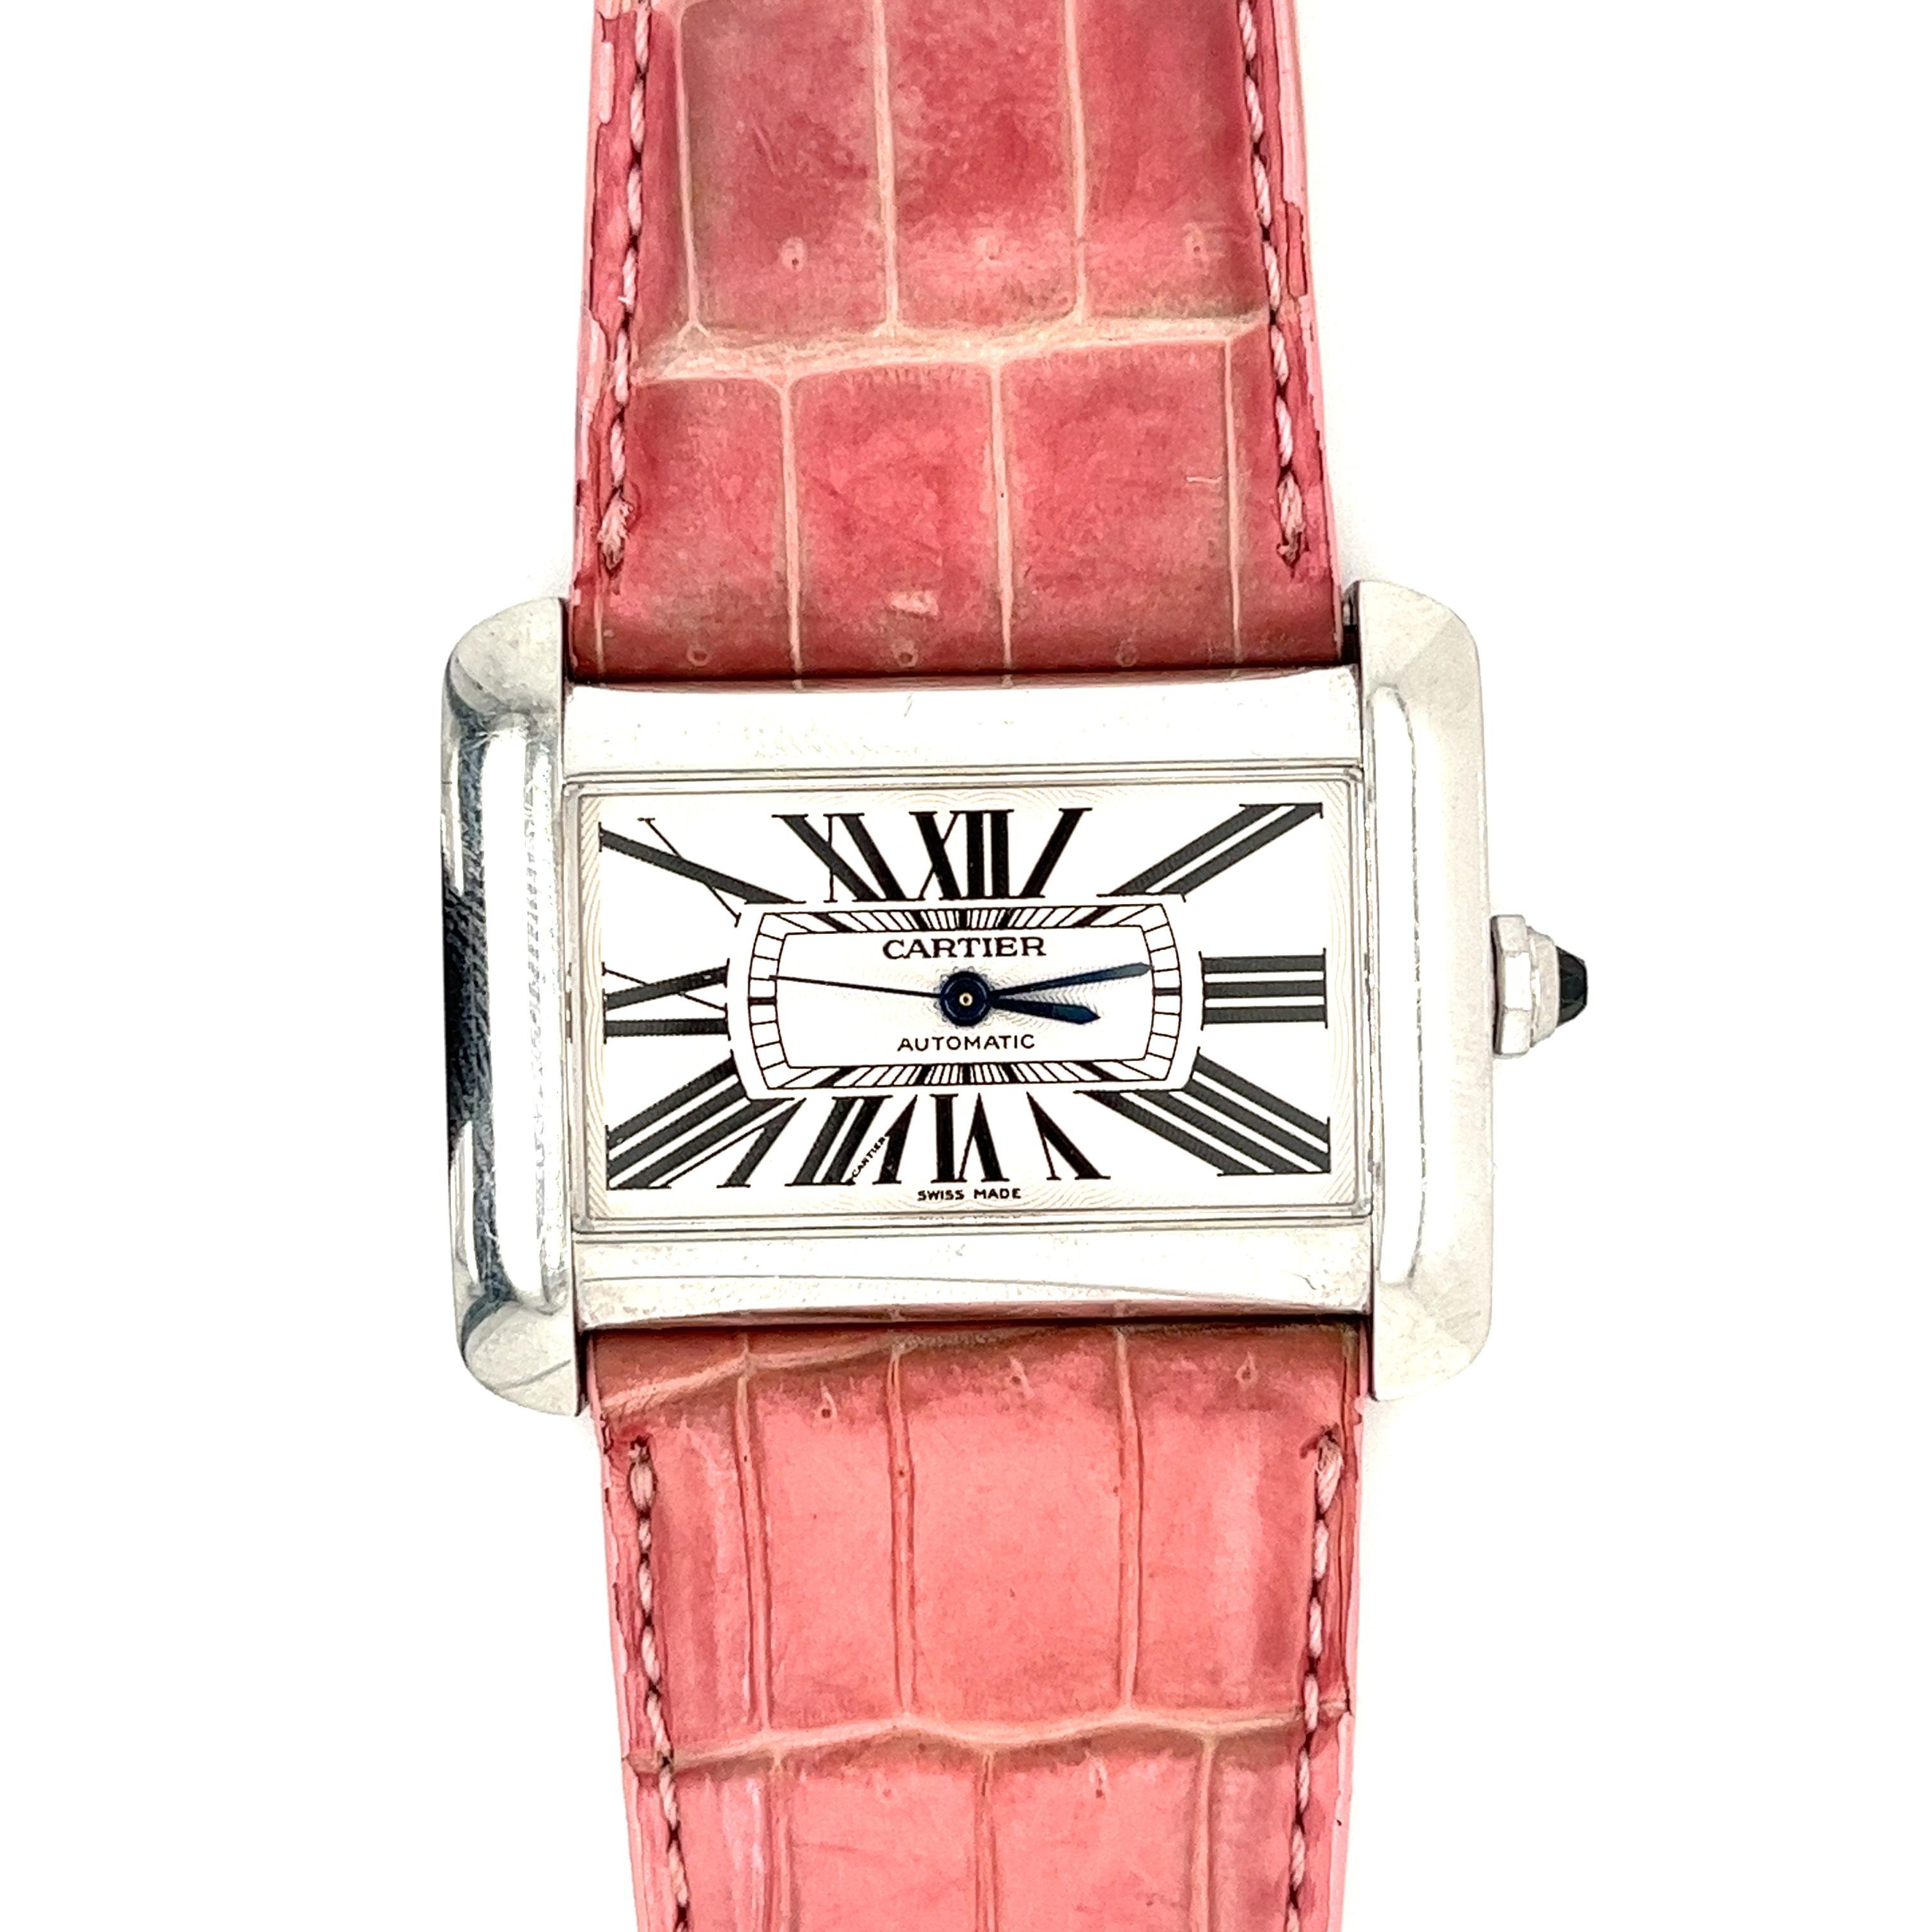 Cartier Automatique Vintage Acier inoxydable réf. 2612 Divan ser. 1030*** / toutes les pièces d'origine / bracelet en cuir rose (convient aux poignets de 6,5 à 8 pouces) / cadran de 38 mm (largeur) x 30 mm (hauteur) / épaisseur 8,3 mm.